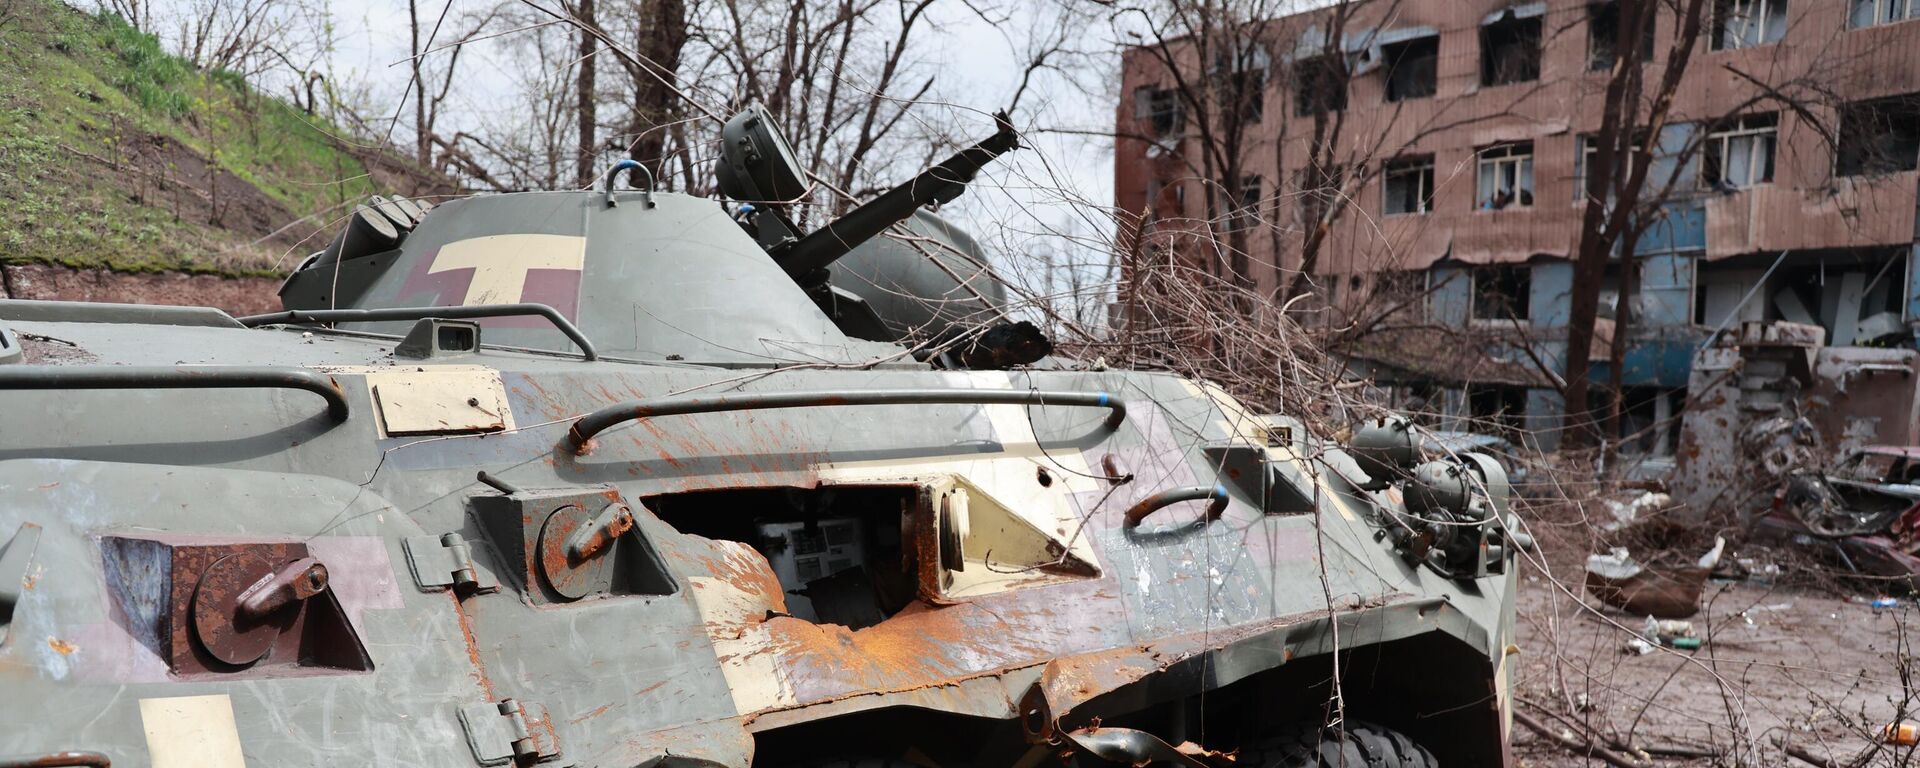 معدات عسكرية أوكرانية محروقة في مصنع المعادن باسم لينين المحرر في ماريوبول، أوكرانيا 18 أبريل 2022 - سبوتنيك عربي, 1920, 27.09.2022